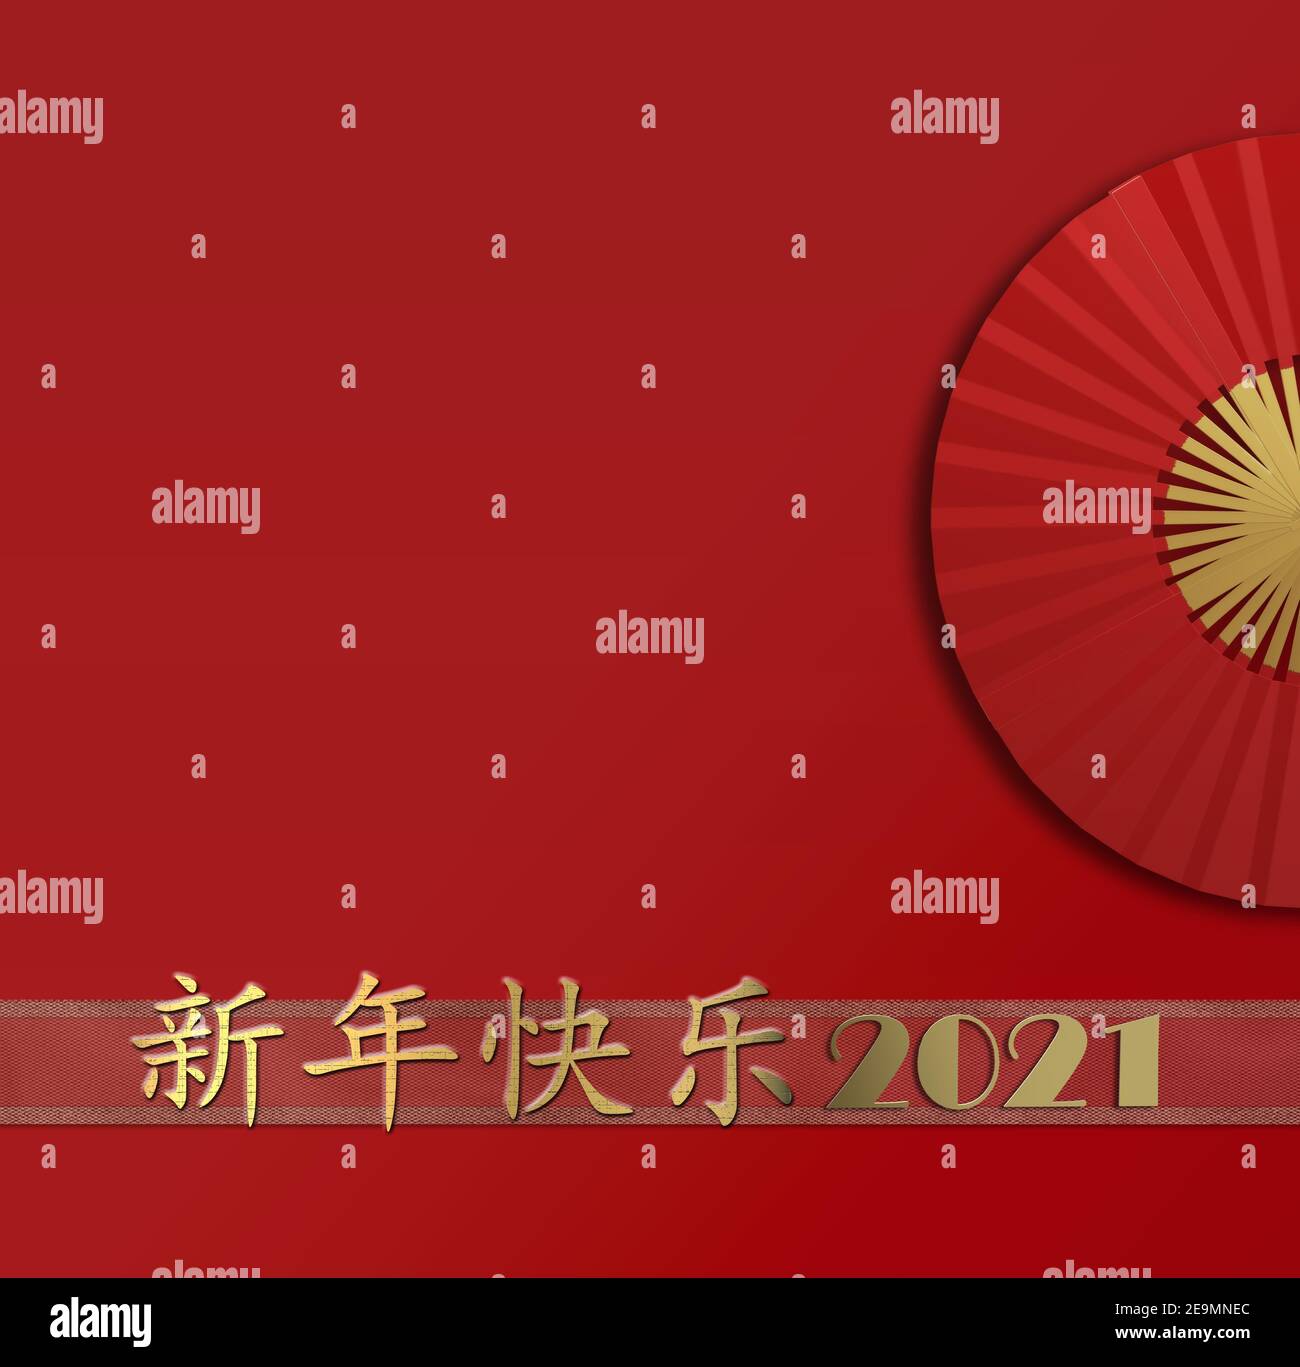 Carte du nouvel an 2021. Joyeux chinois nouvelle année texte d'or en chinois, chiffre 2021, fan sur fond rouge. Design pour carte de voeux, invitation, po Banque D'Images